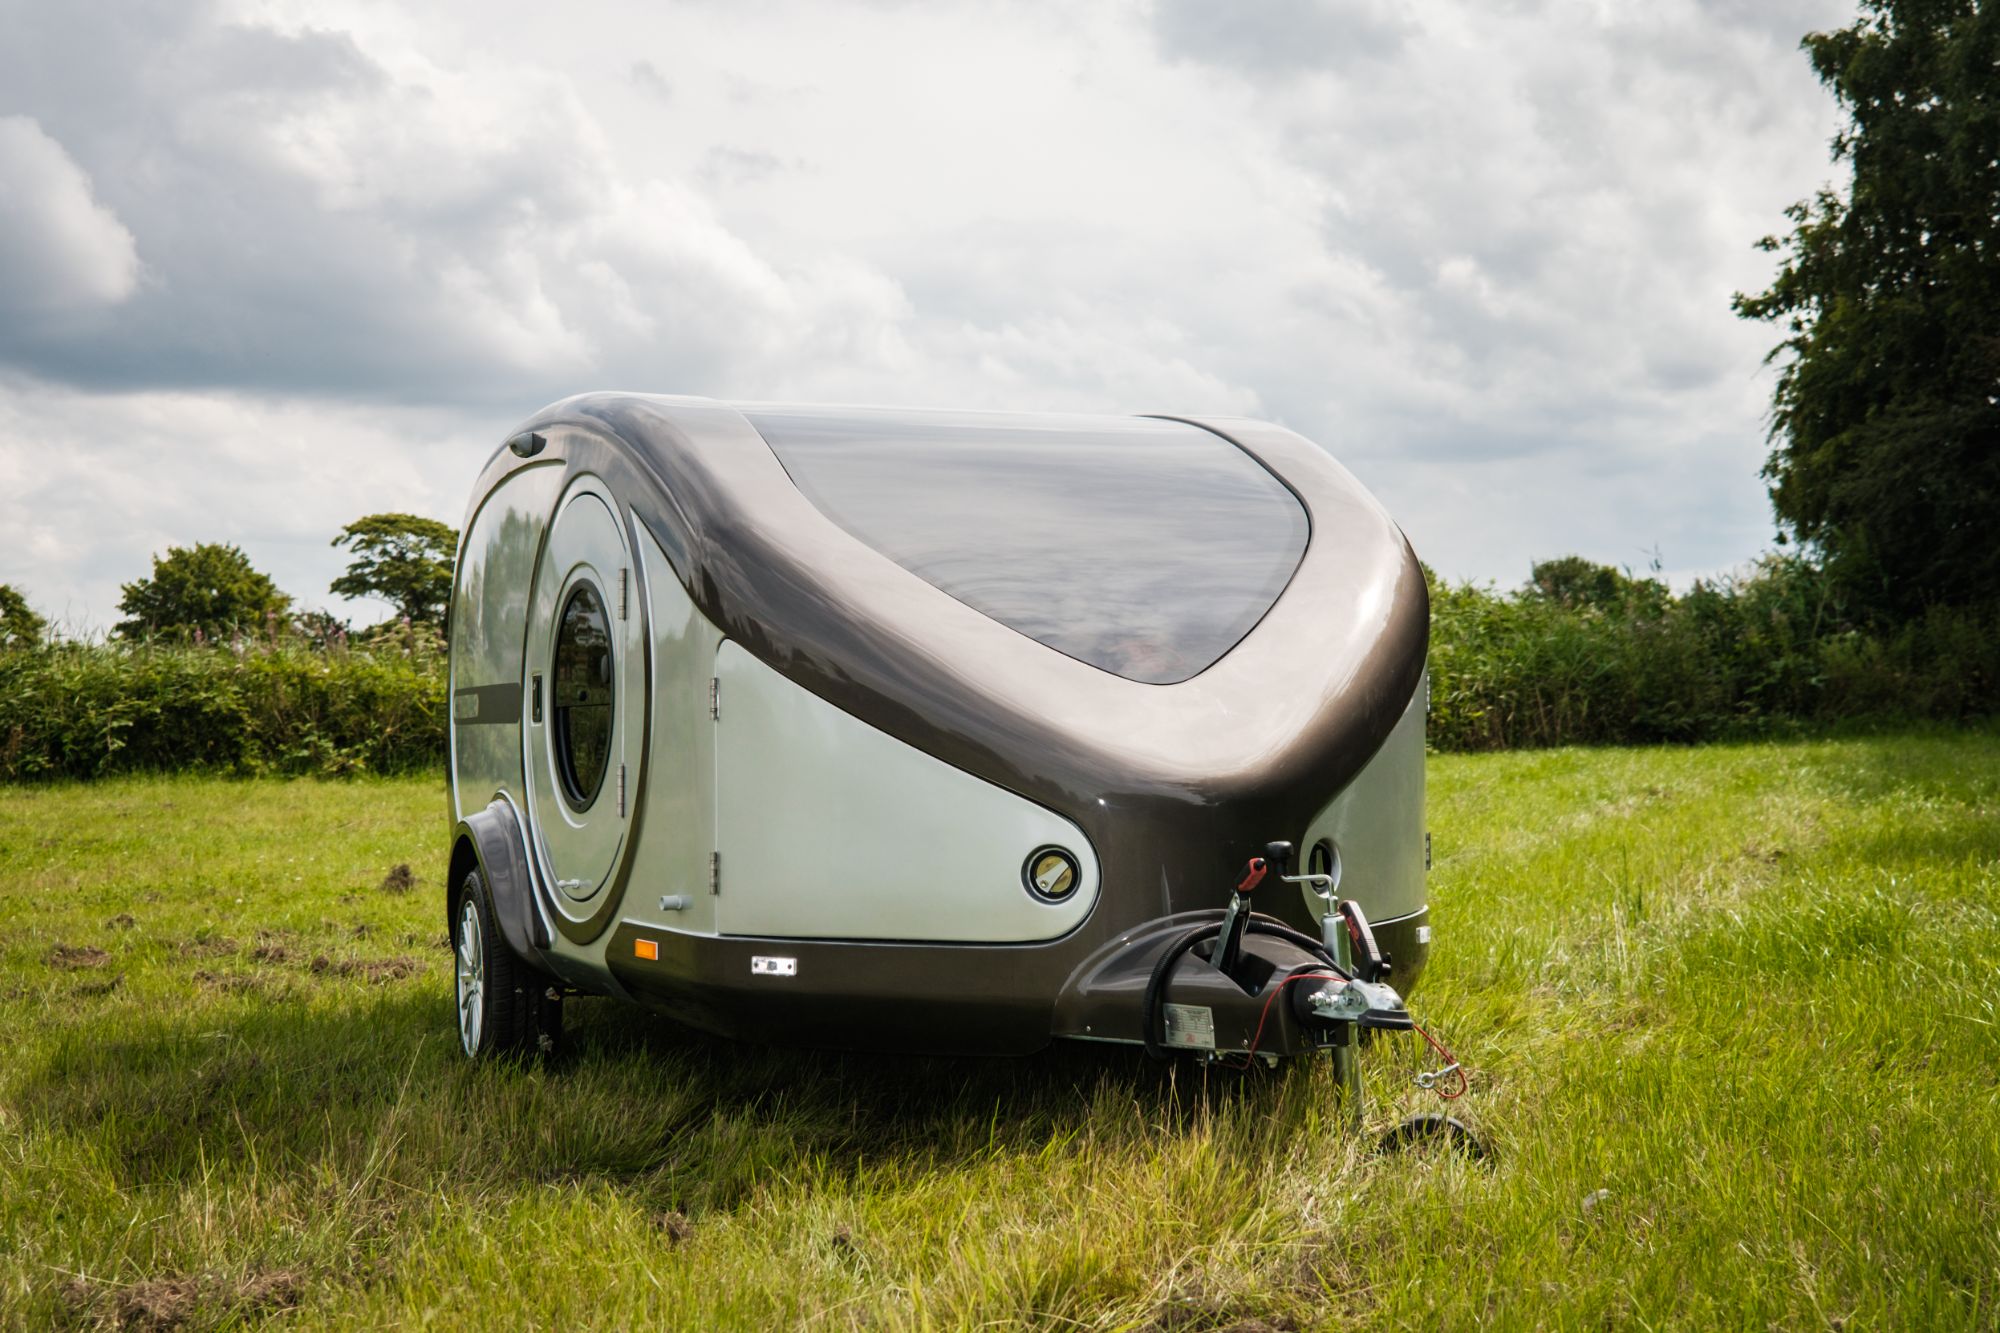 Small caravans | Go-Pods.co.uk | CUB teardrop camper | SABRE ...